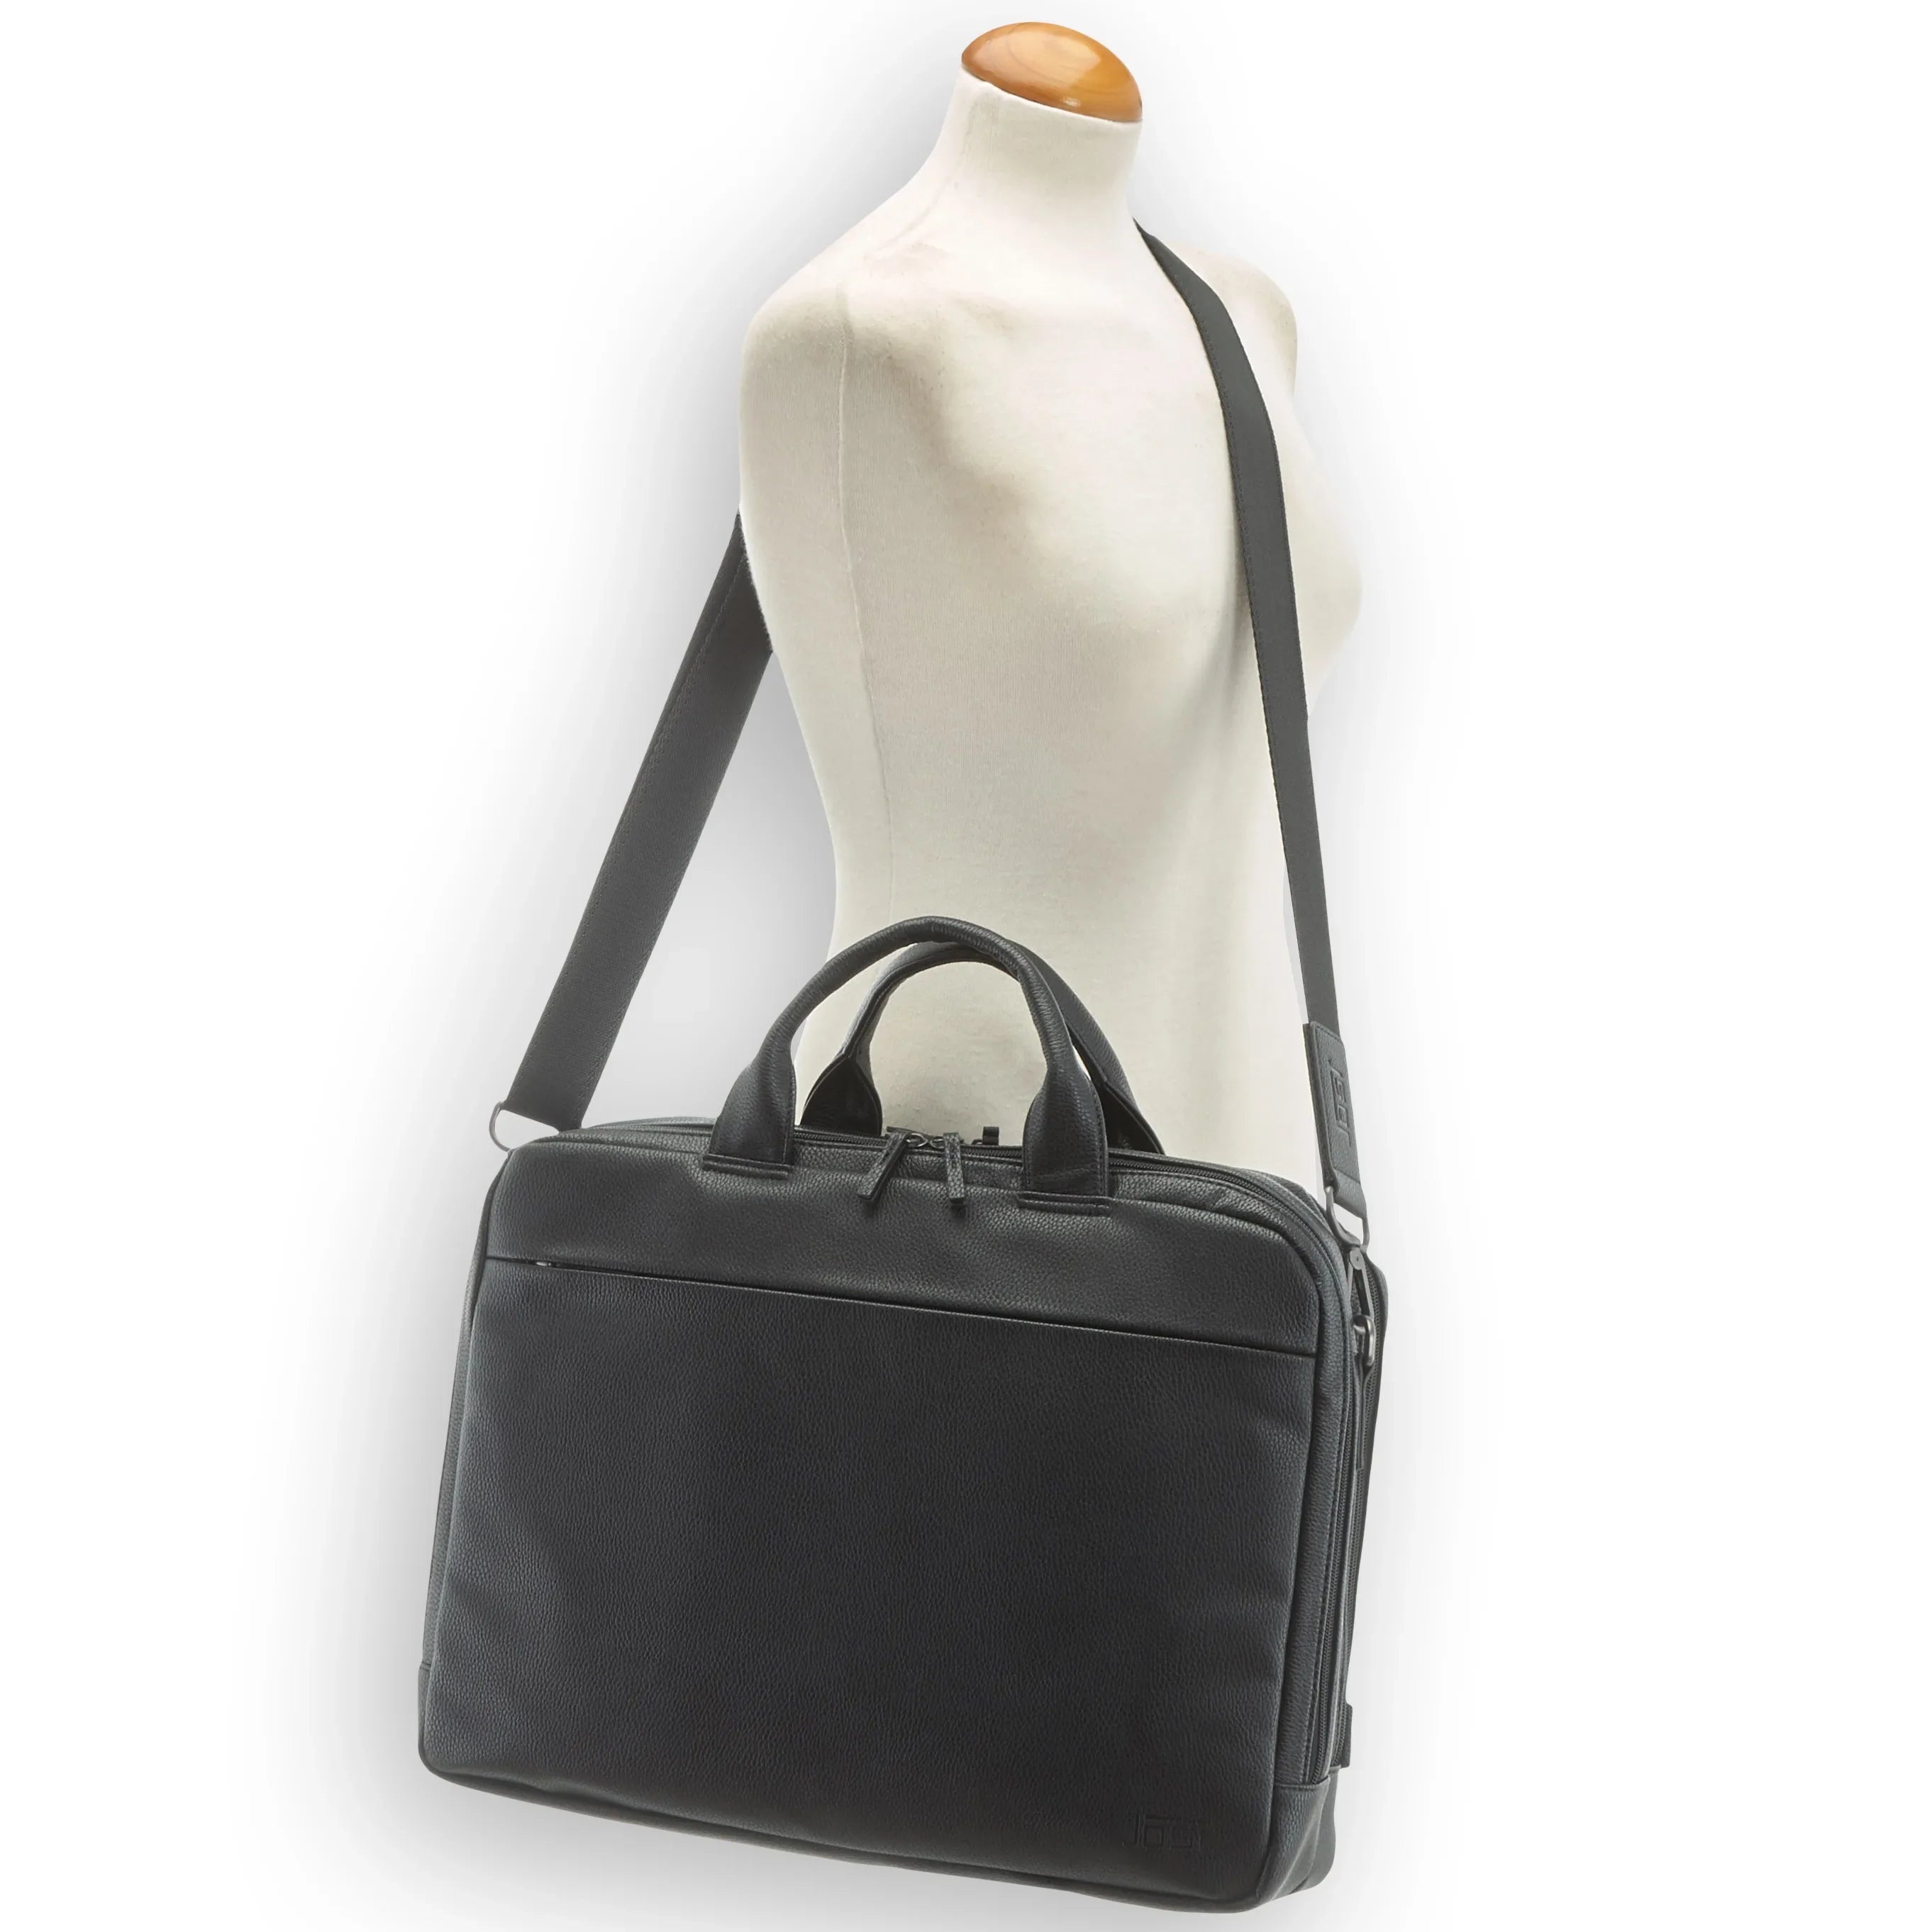 Jost Bodo II business bag 42 cm - black